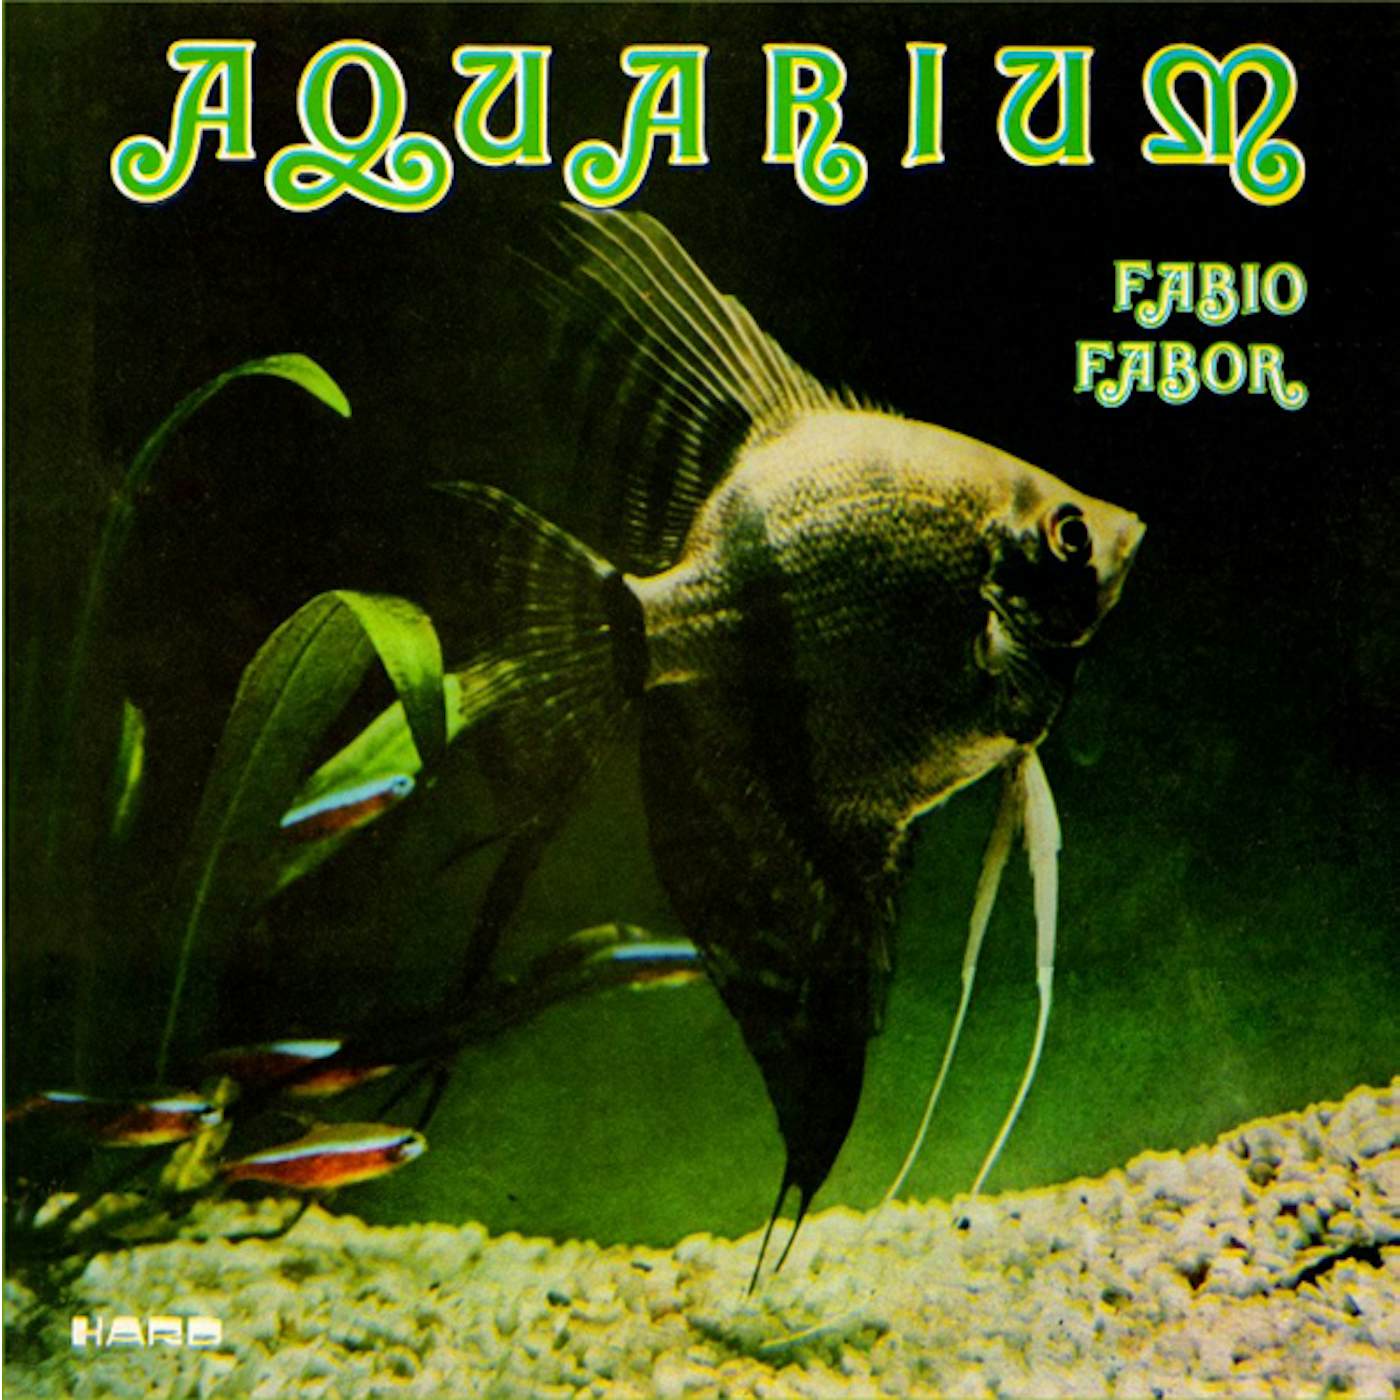 Fabio Fabor Aquarium Vinyl Record